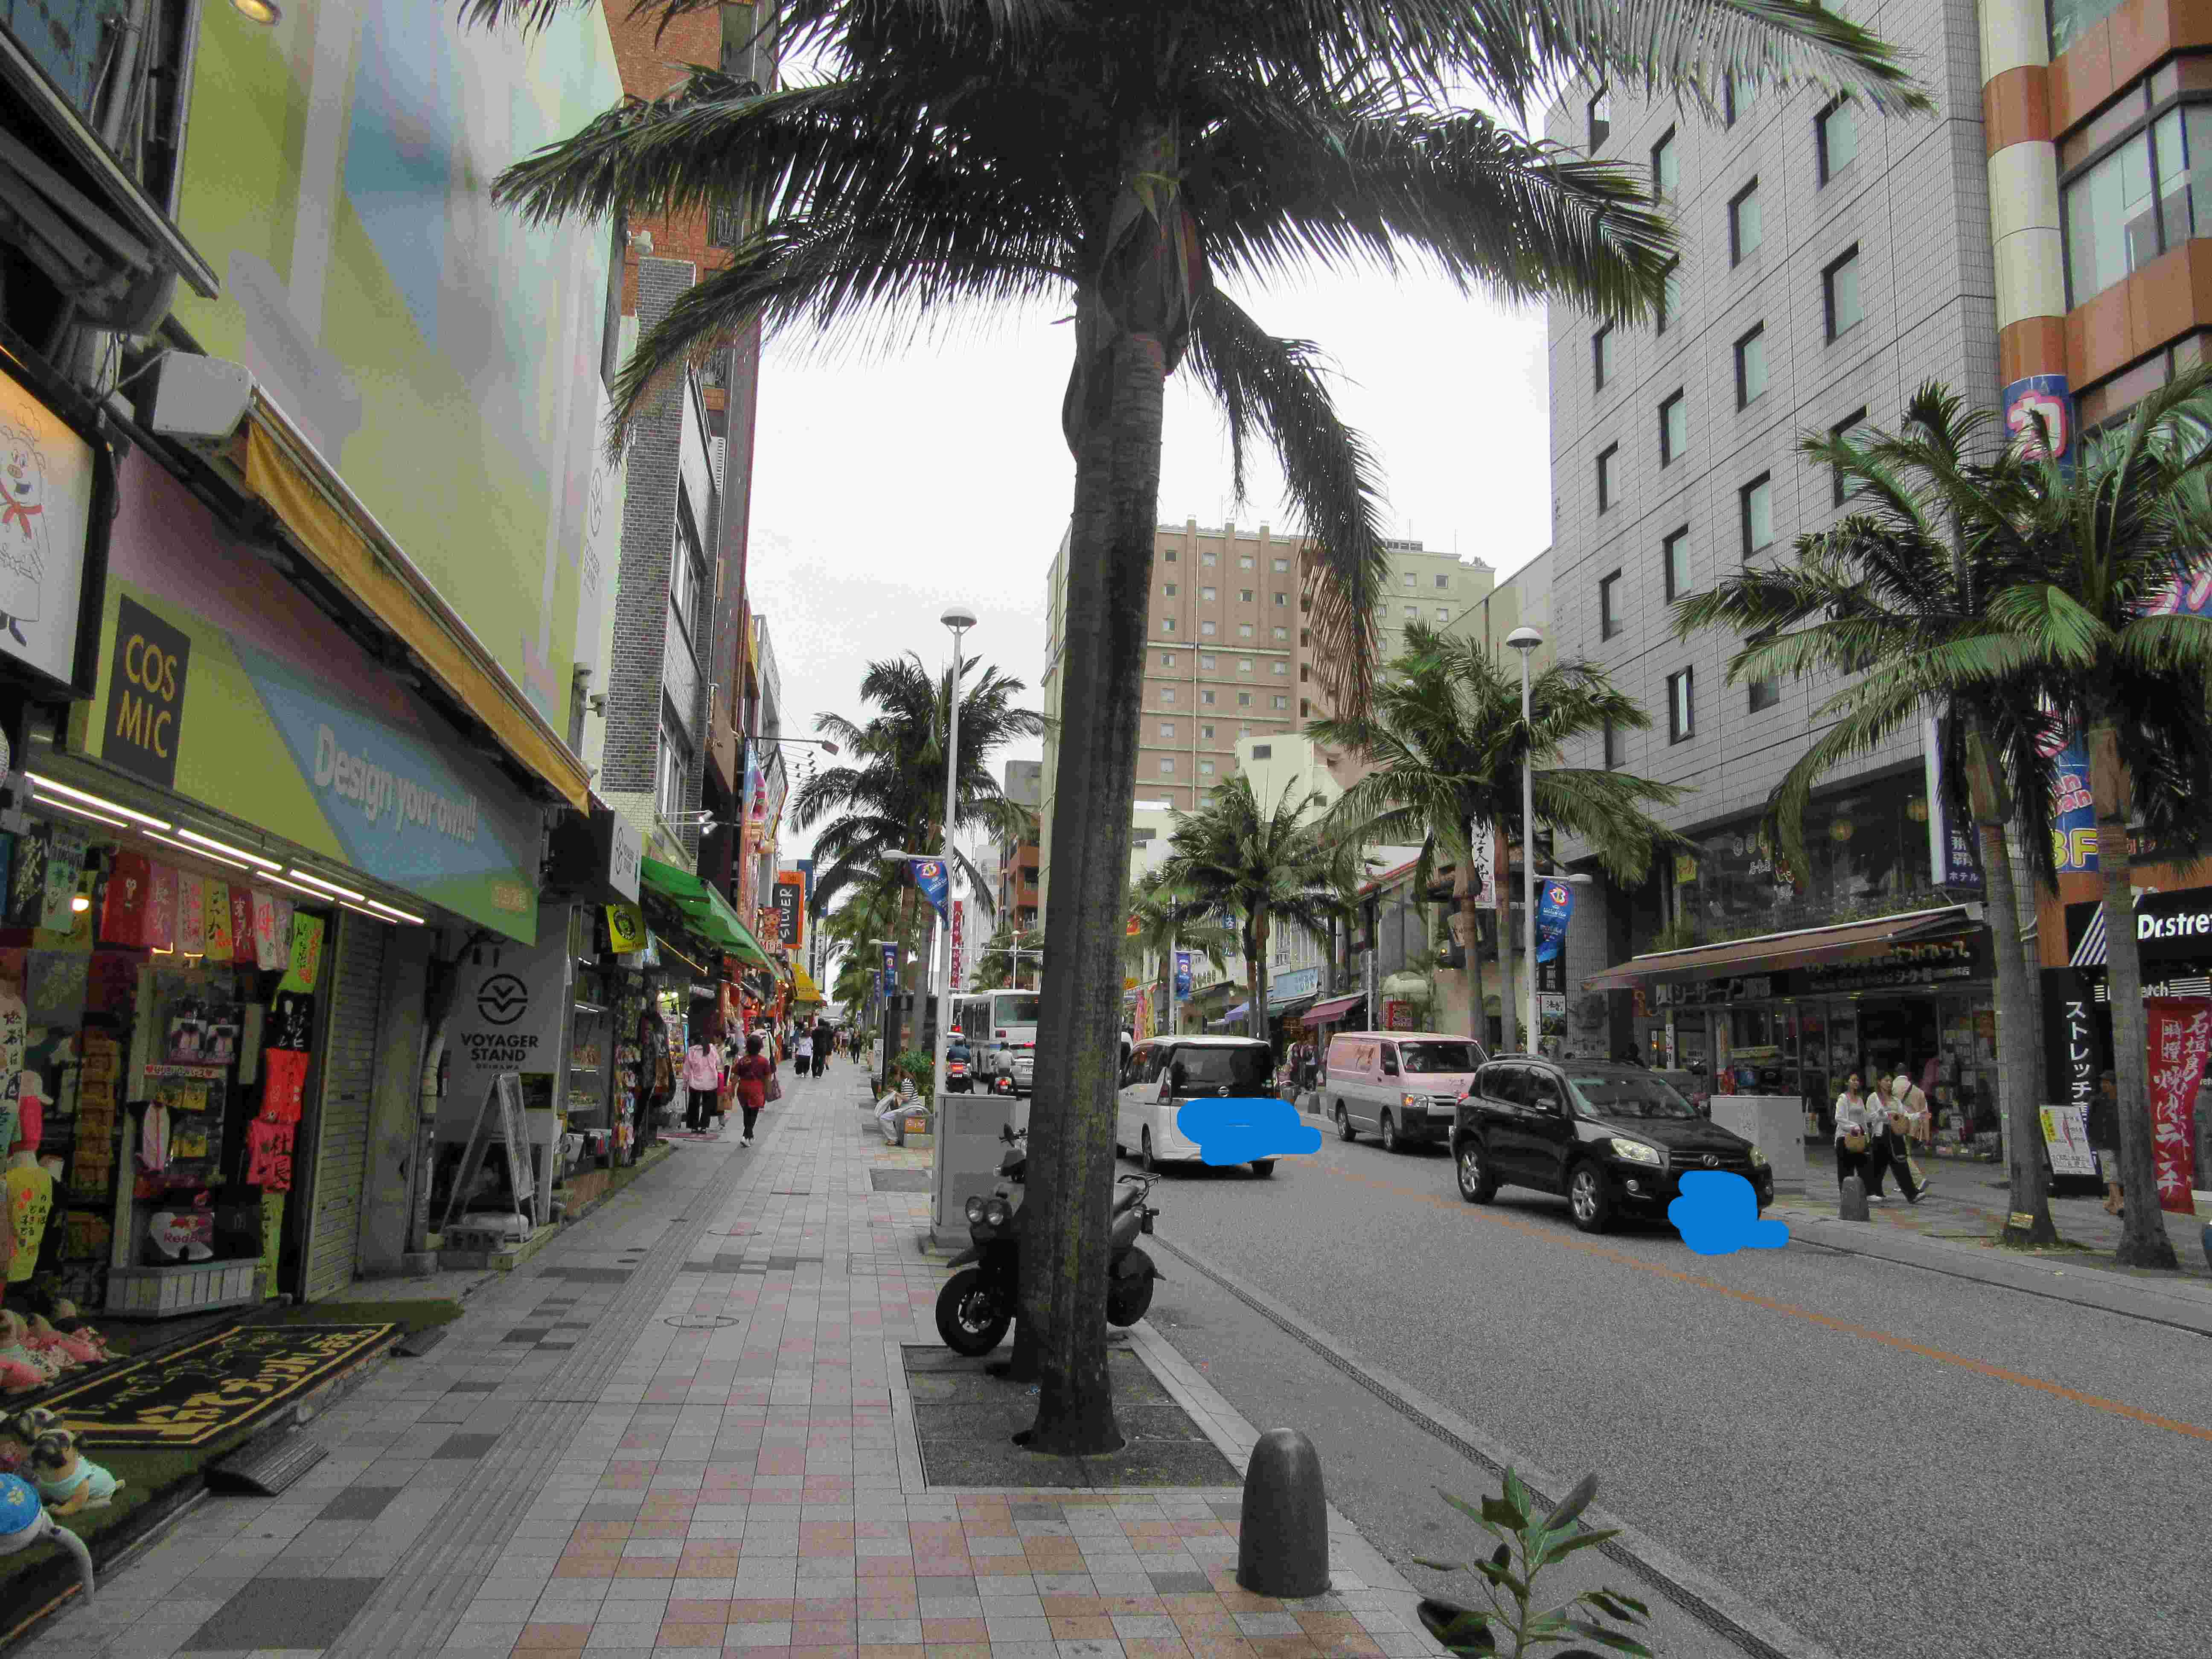 引き続き、国際通りを進んでいきます。木といい、沖縄のメインストリート感がありますね。